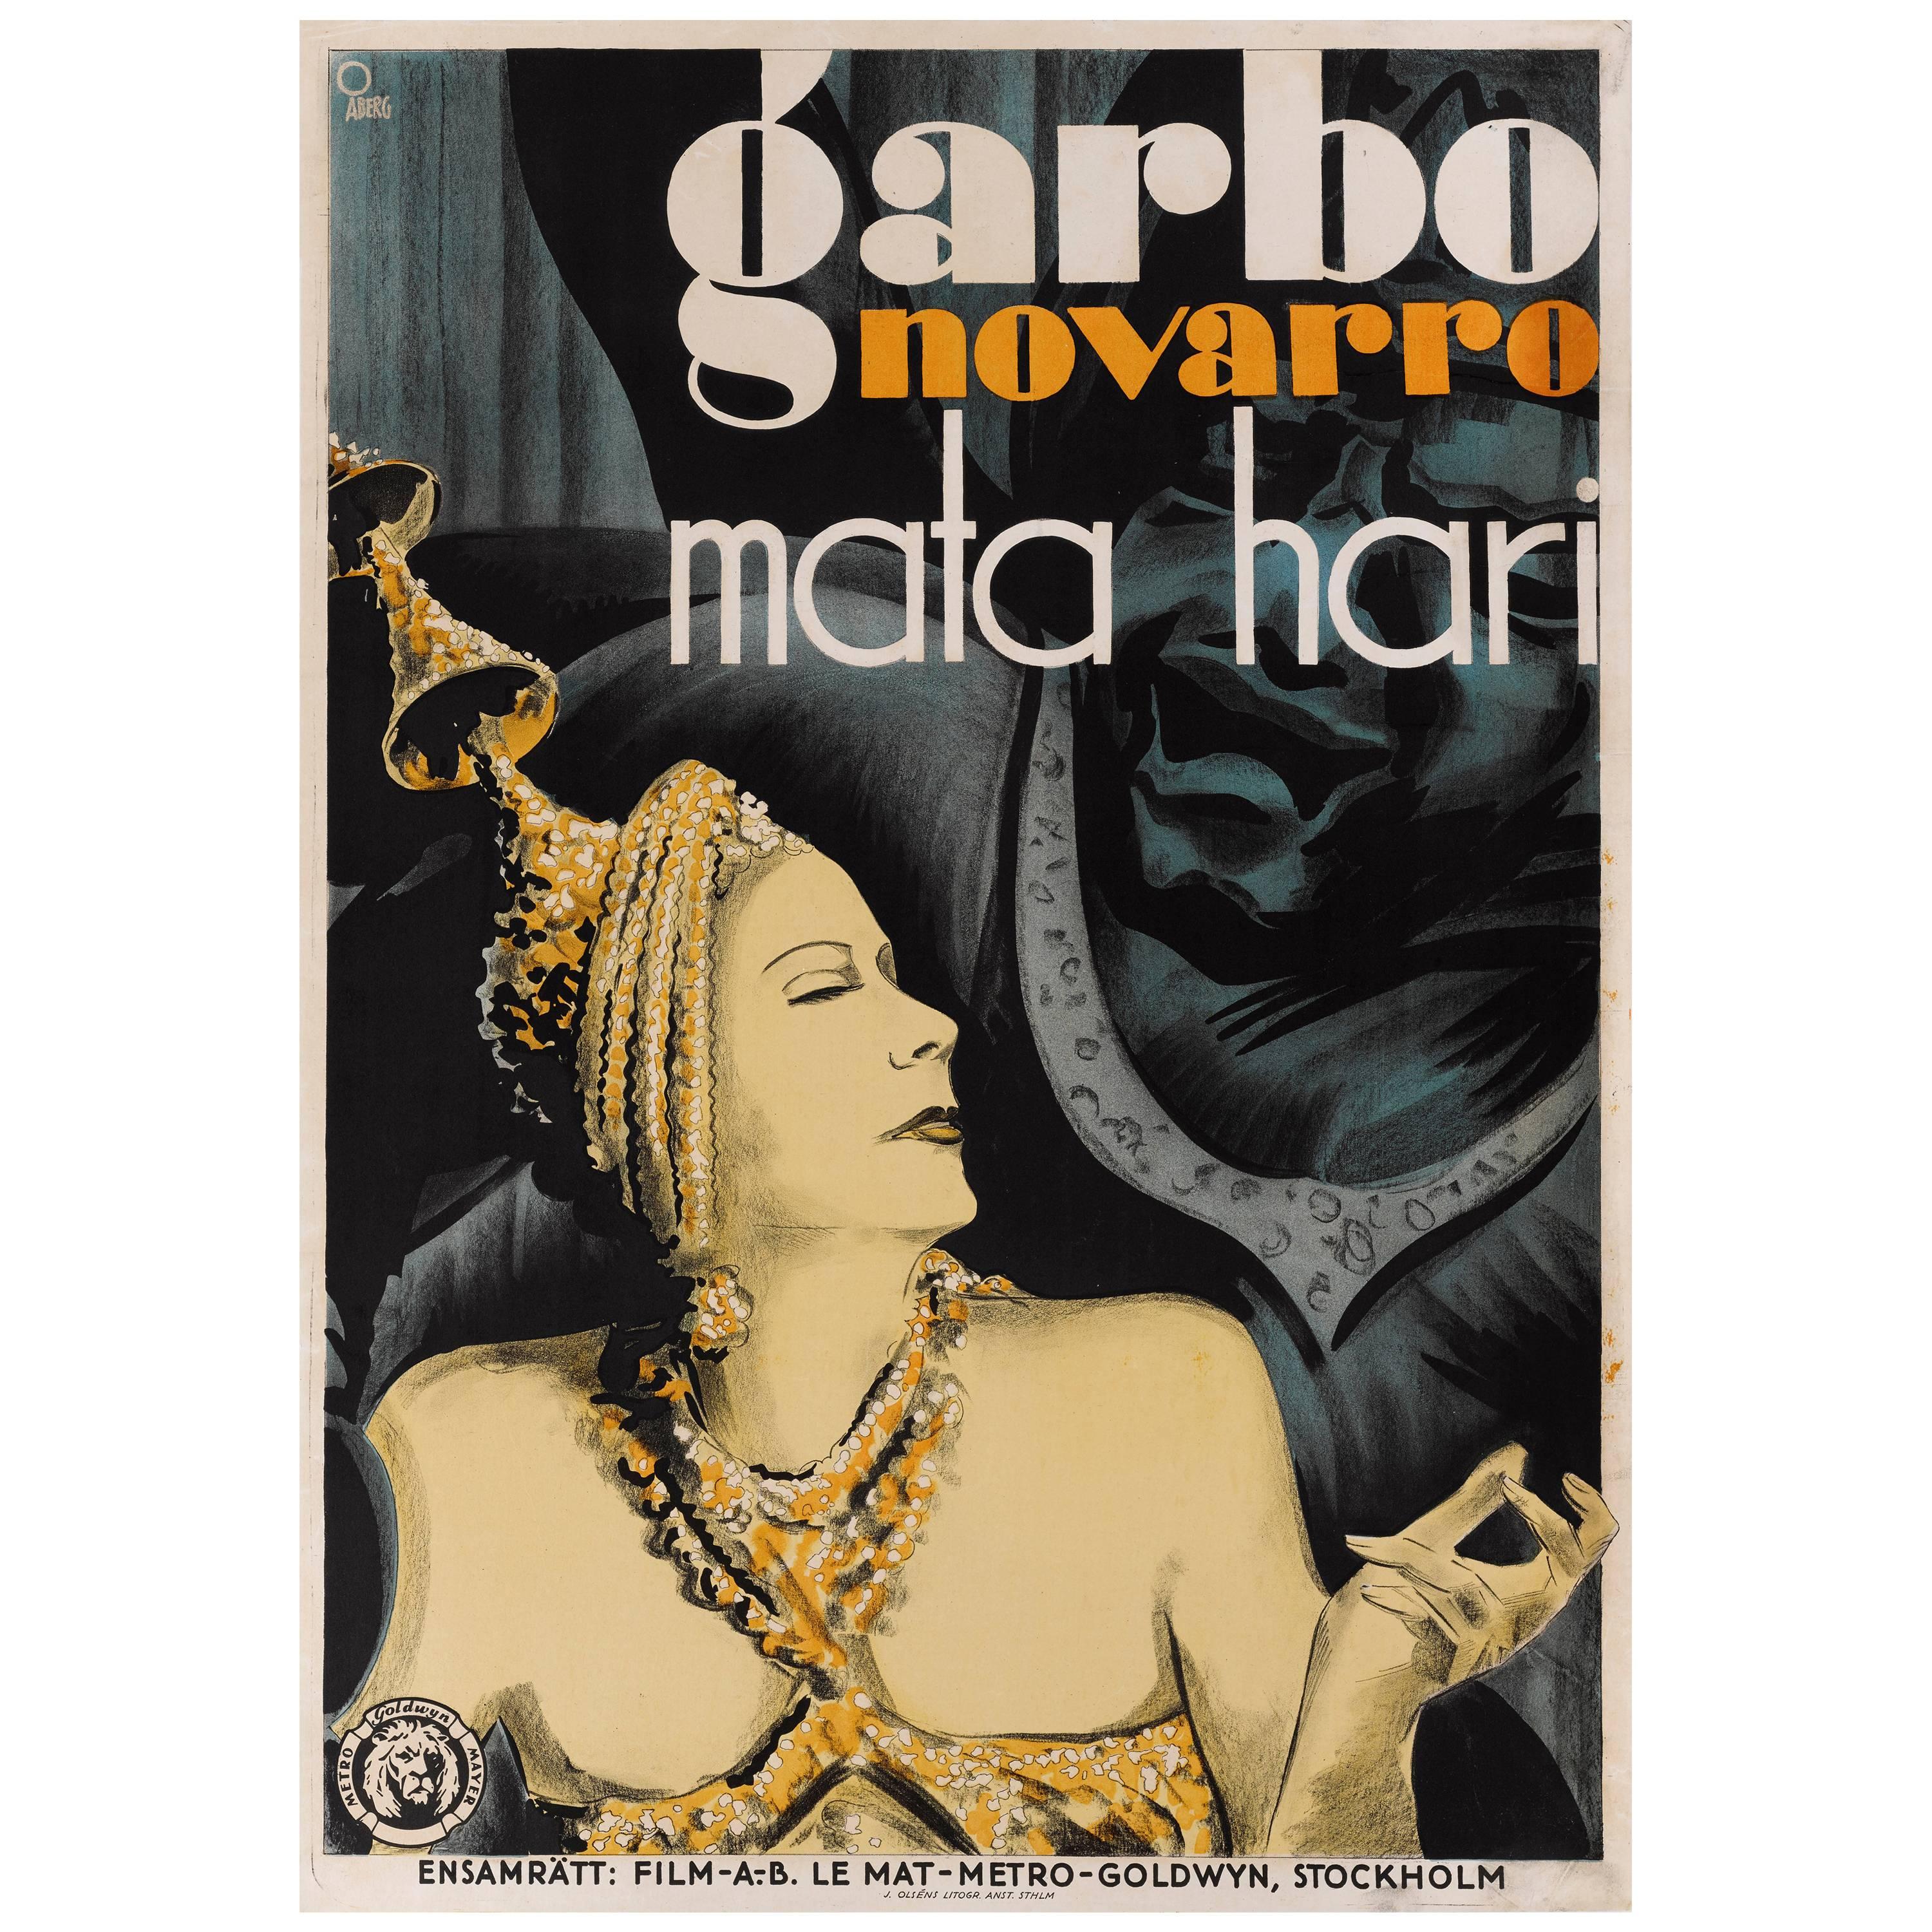 Mata Hari im Angebot